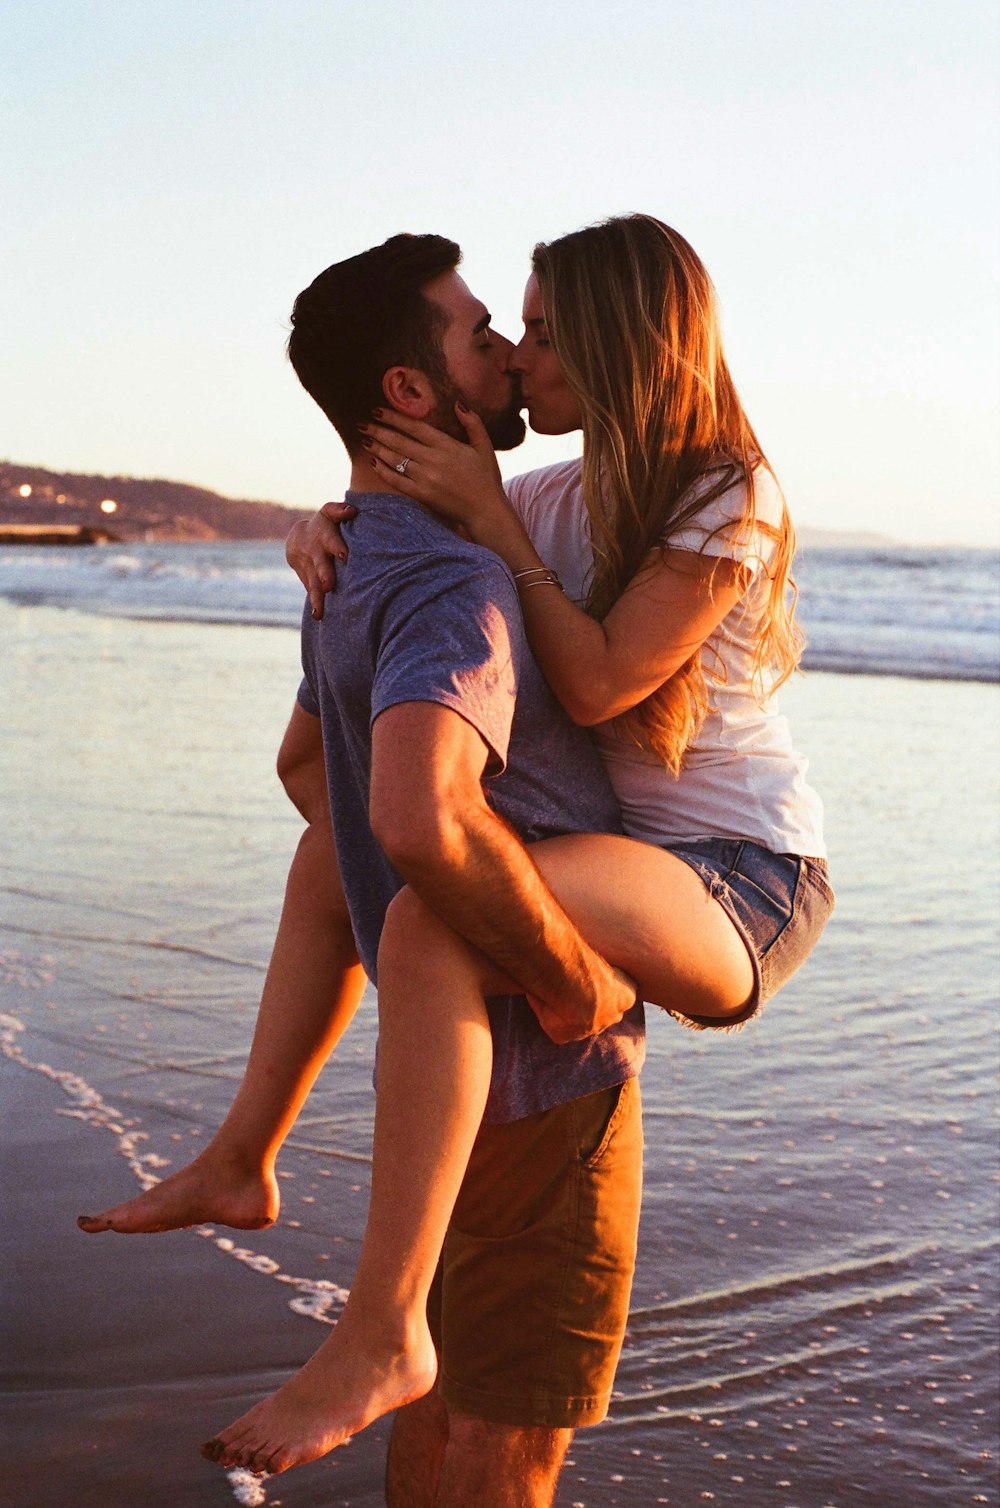 homme portant et embrassant une femme sur la plage